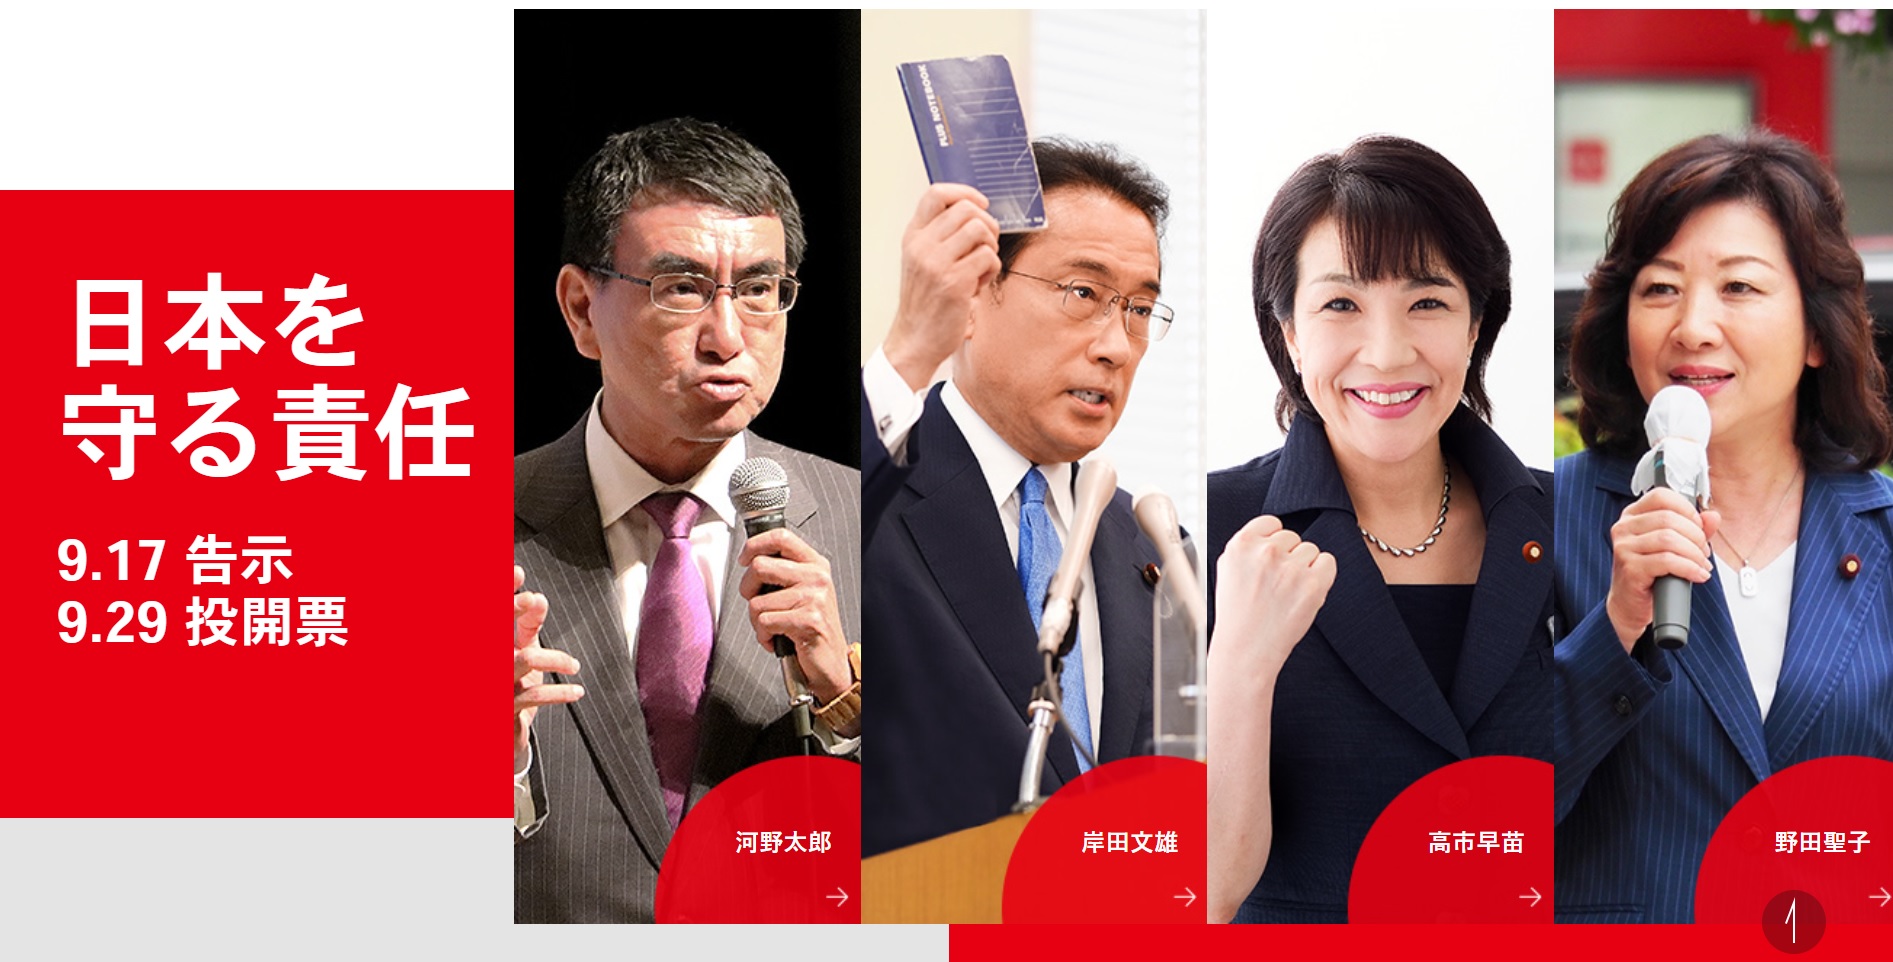 자민당 총재 선거 후보 4명. 왼쪽부터 고노 다로, 기시다 후미오, 다카이치 사나에, 노다 세이코